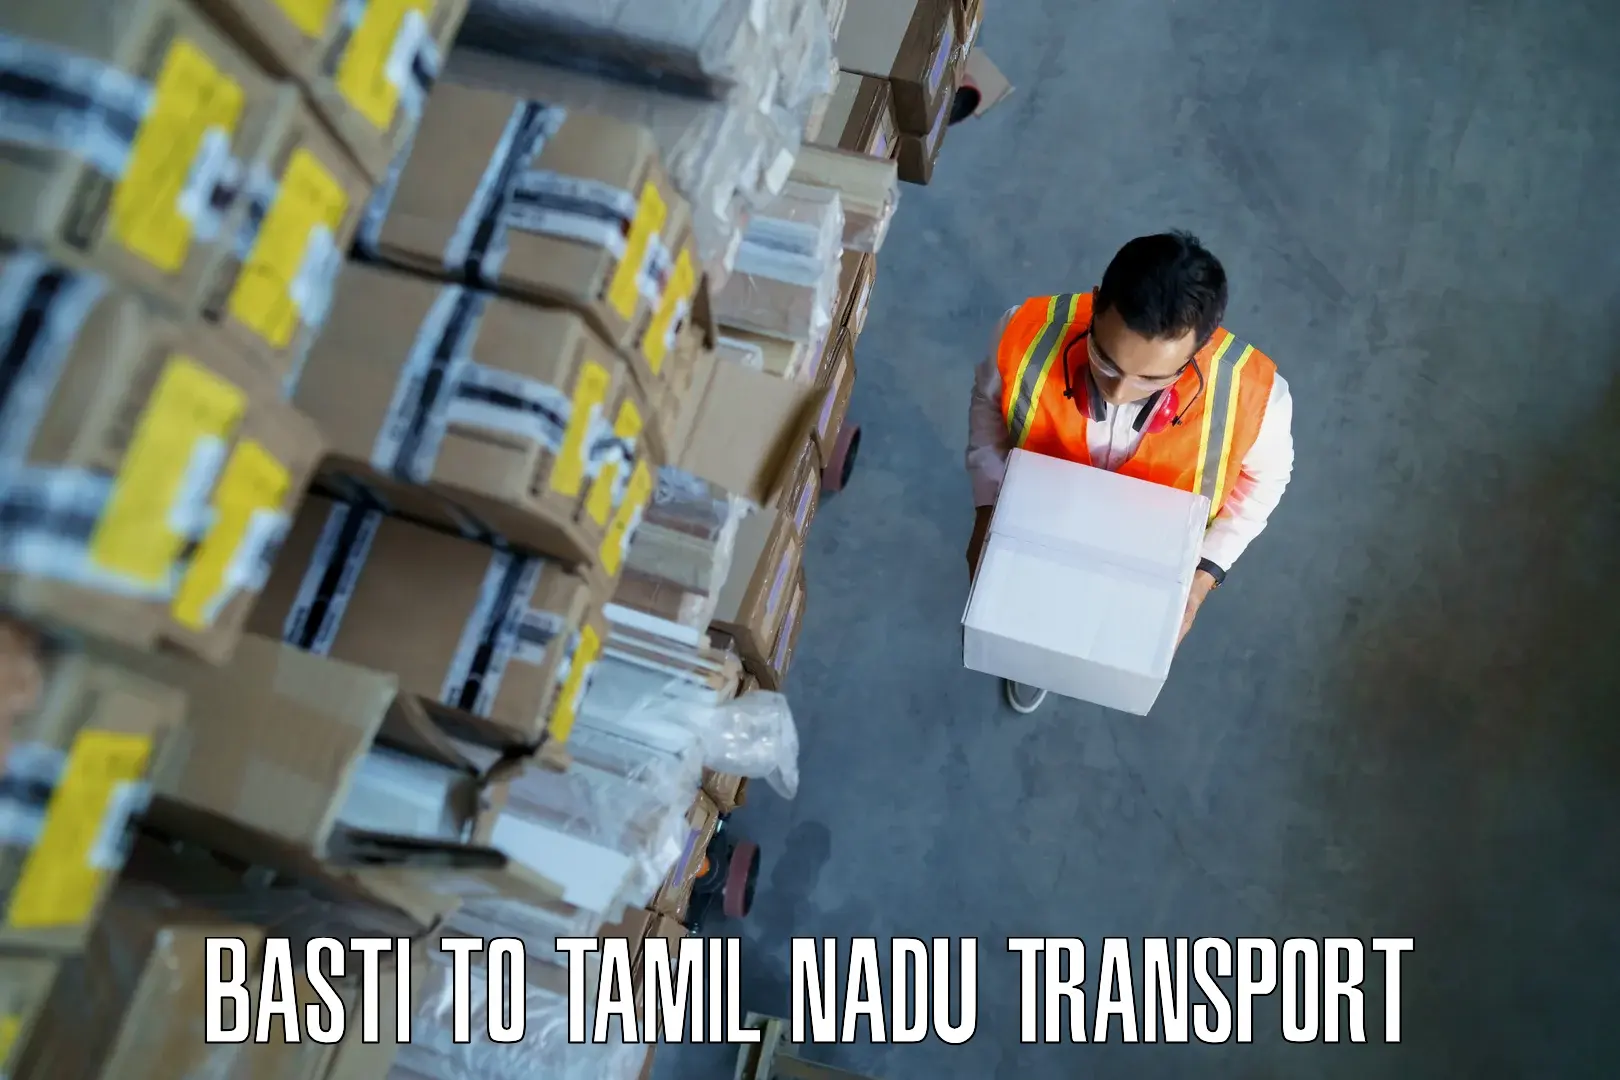 International cargo transportation services Basti to Chinnasalem